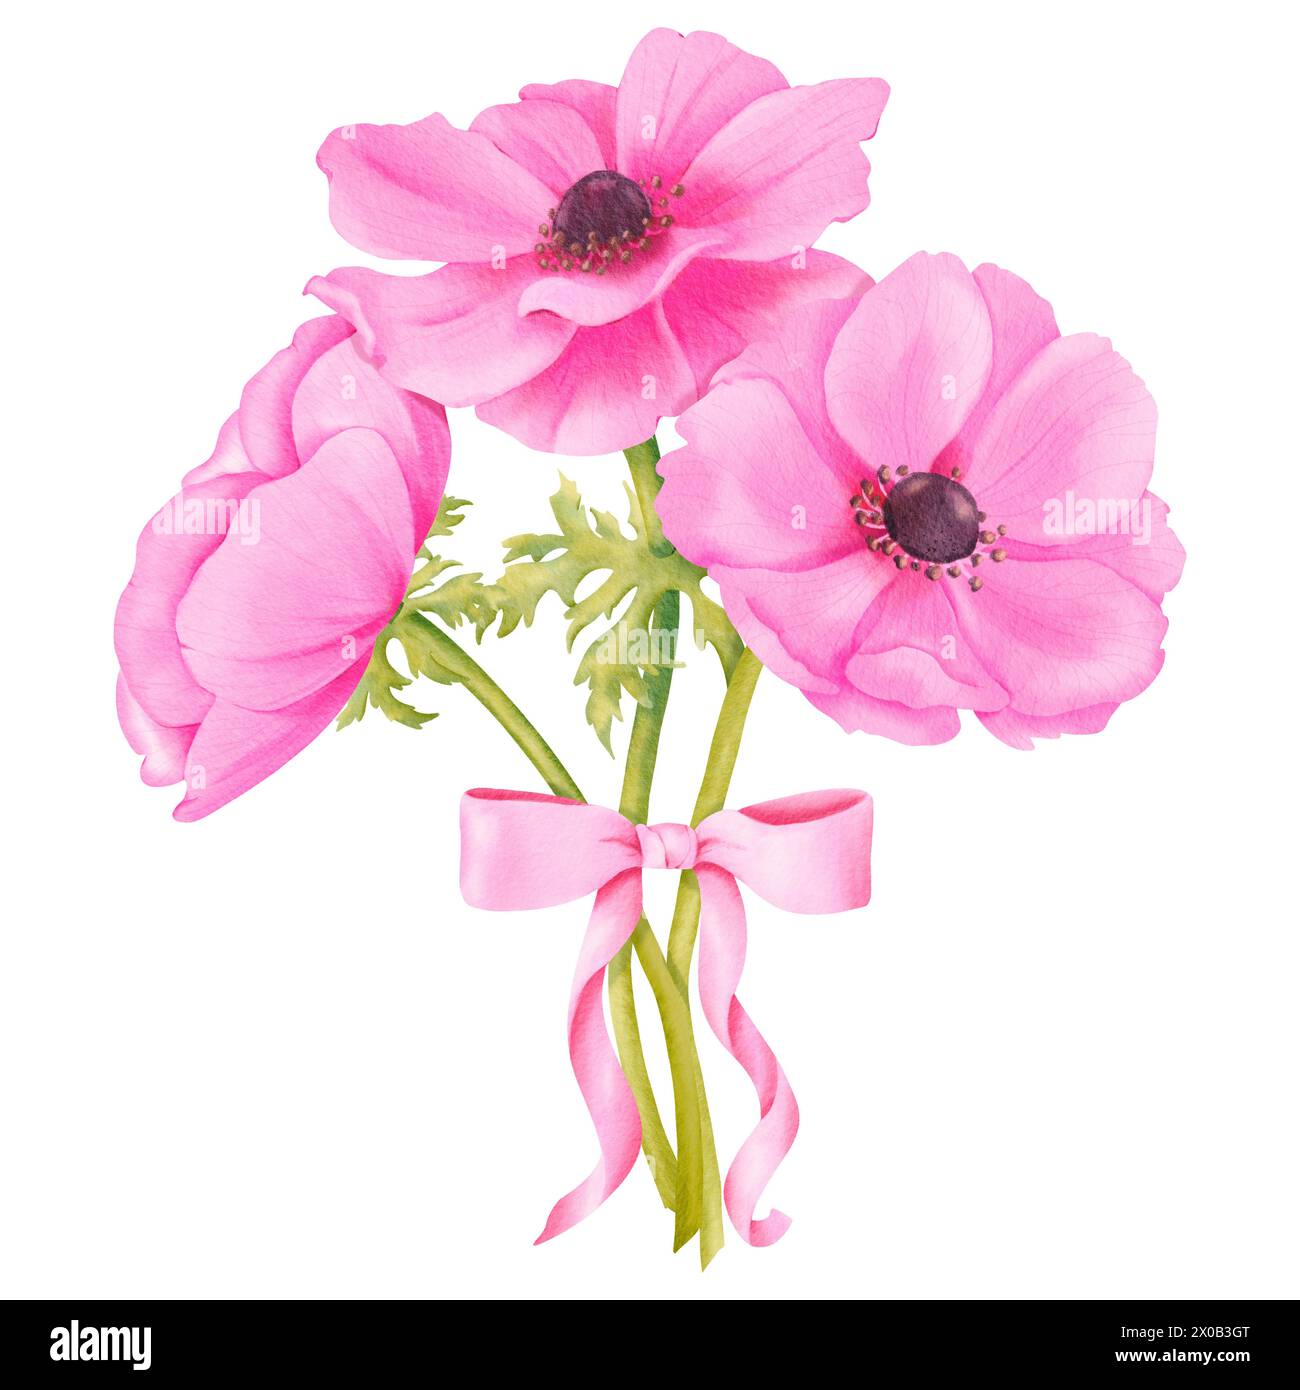 Ein Strauß rosa Anemonen, verziert mit einem pinkfarbenen Satinband. Aquarelle zur Verschönerung von Hochzeitseinladungen Grußkarten mit Blumenmotiven Stockfoto